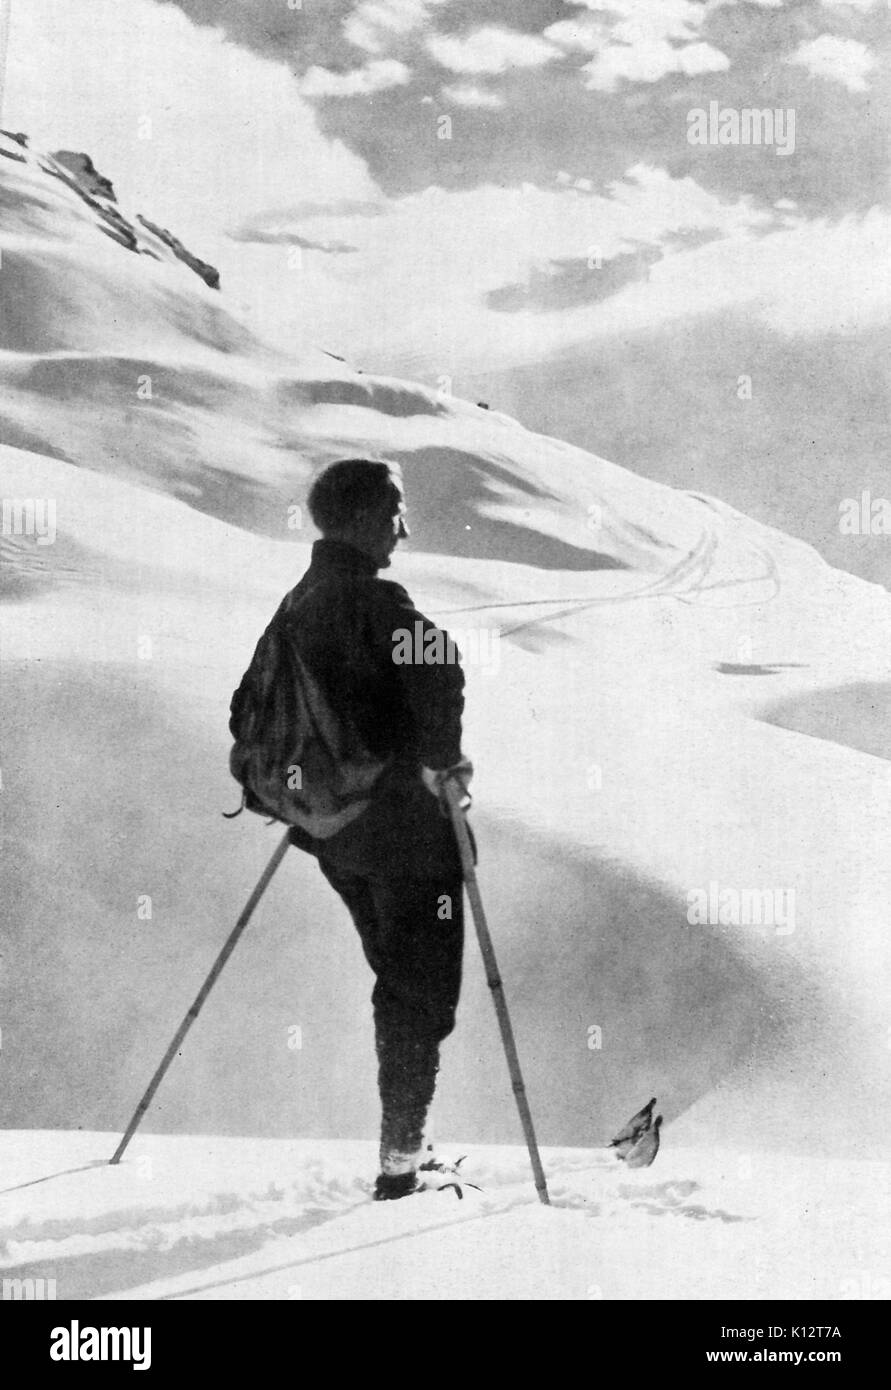 Hombre con gafas de sol posa con esquí y otros equipos en la cima de la  montaña